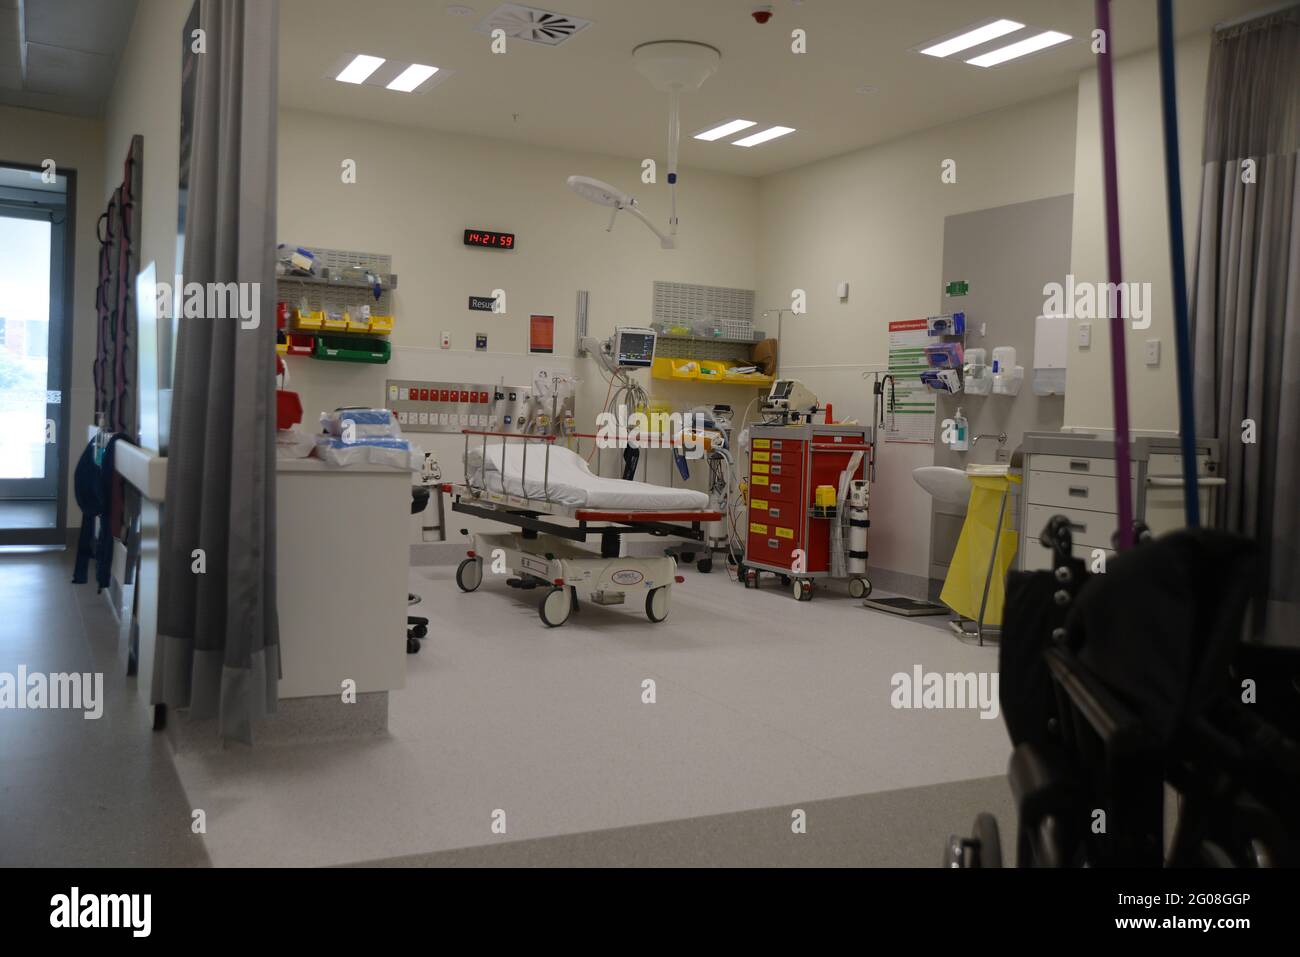 GREYMOUTH, NUEVA ZELANDA, 19 de enero de 2021: La sala de emergencias espera a los pacientes en el edificio del Hospital Te Nikau en Greymouth, Nueva Zelanda, 19 de enero, Foto de stock